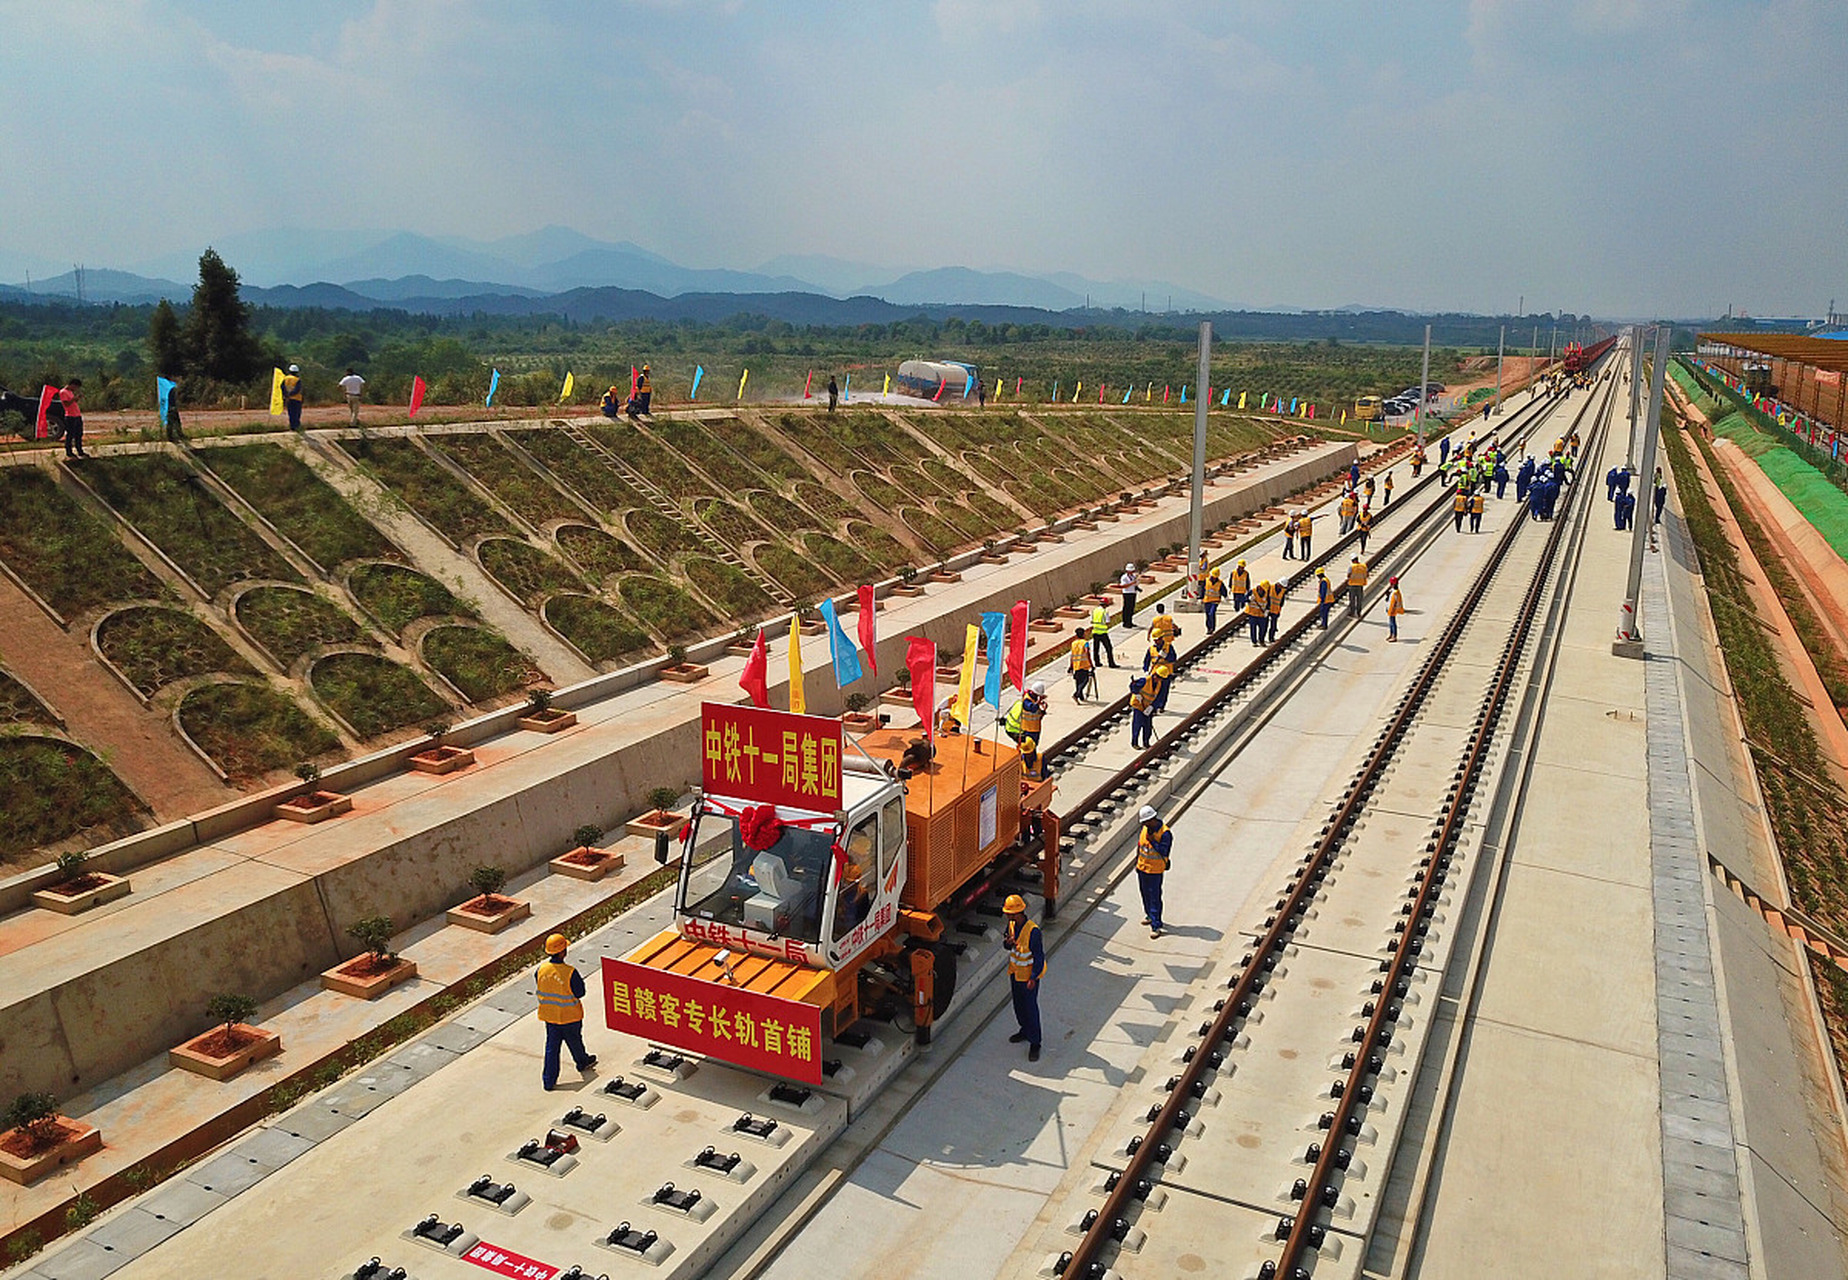 湛海高铁始于湛江市霞山区湛江北站,经雷州市,徐闻县后通过轮渡接入